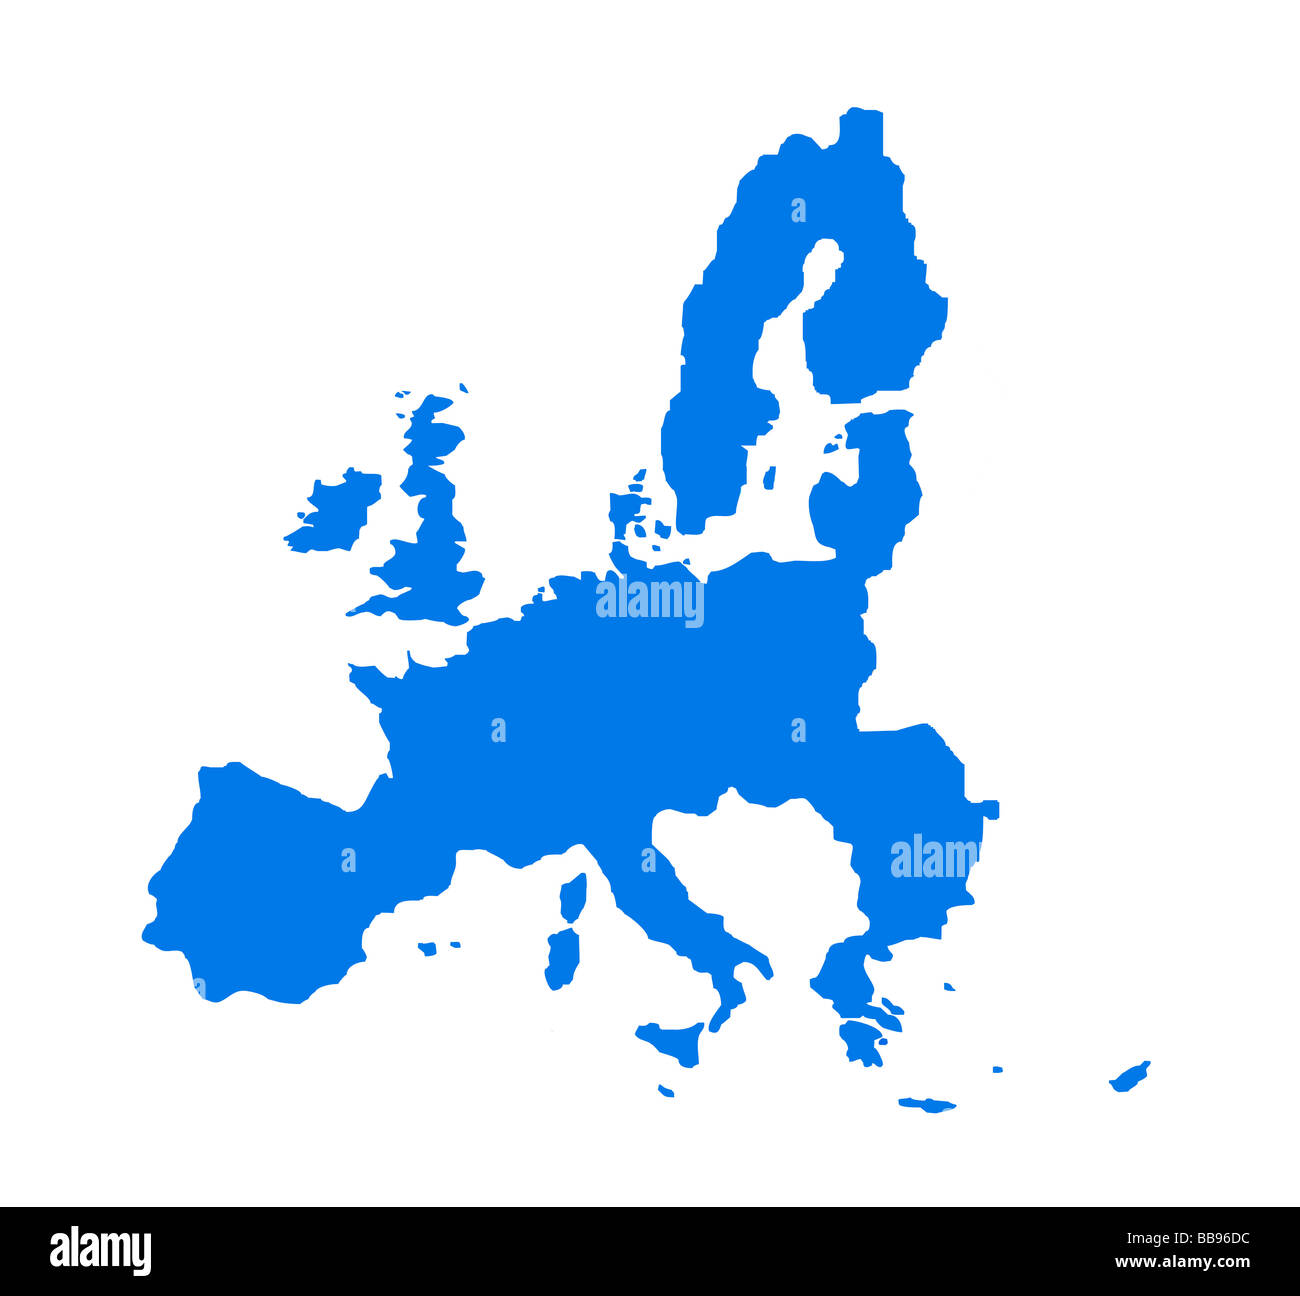 Mapa de contorno de los países de la Unión Económica Europea en azul aislado sobre fondo blanco. Foto de stock